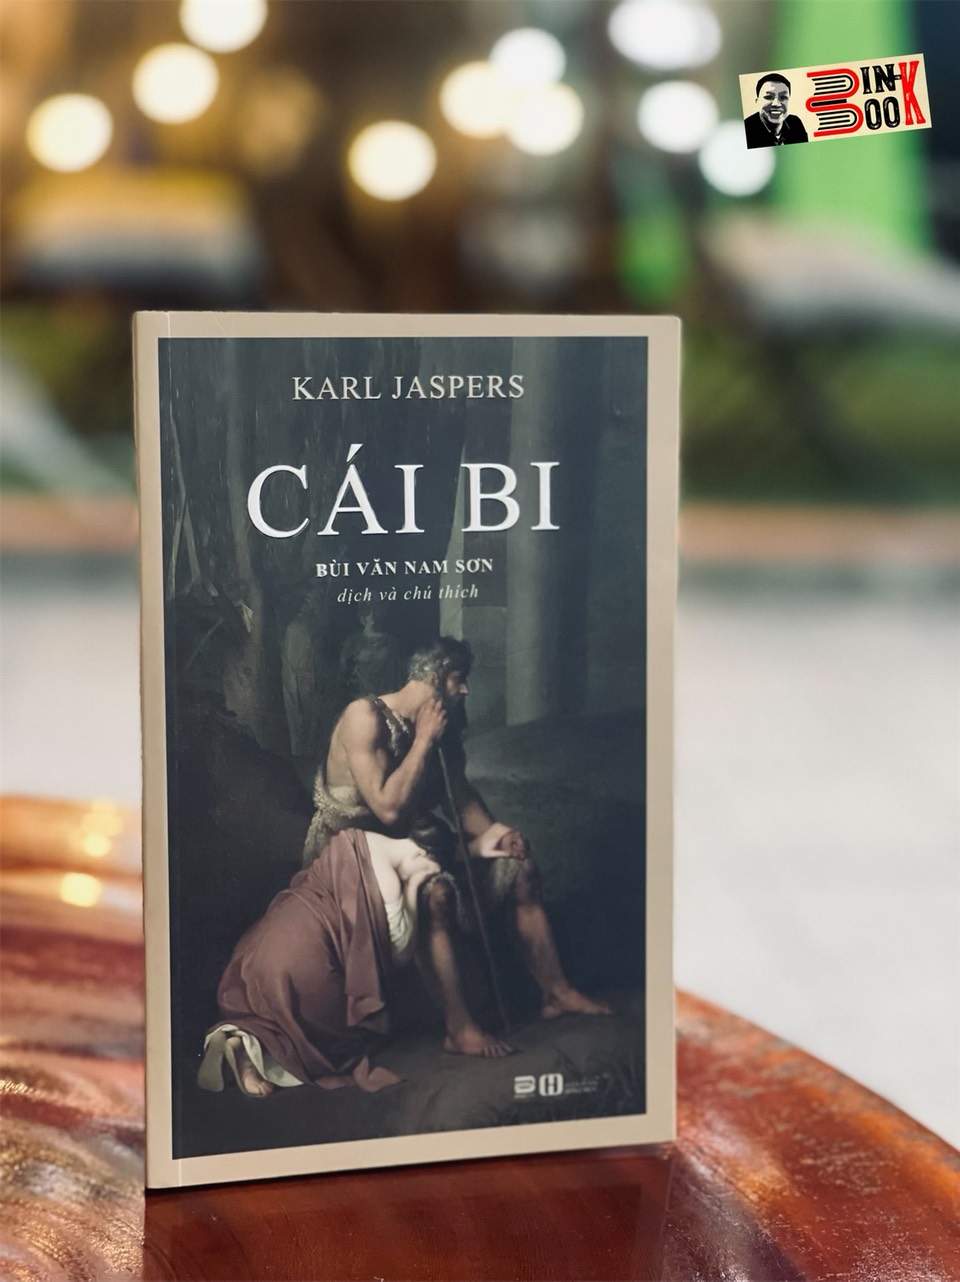 CÁI BI – Karl Jaspers – Bùi Văn Nam Sơn dịch – Phanbook – bìa mềm